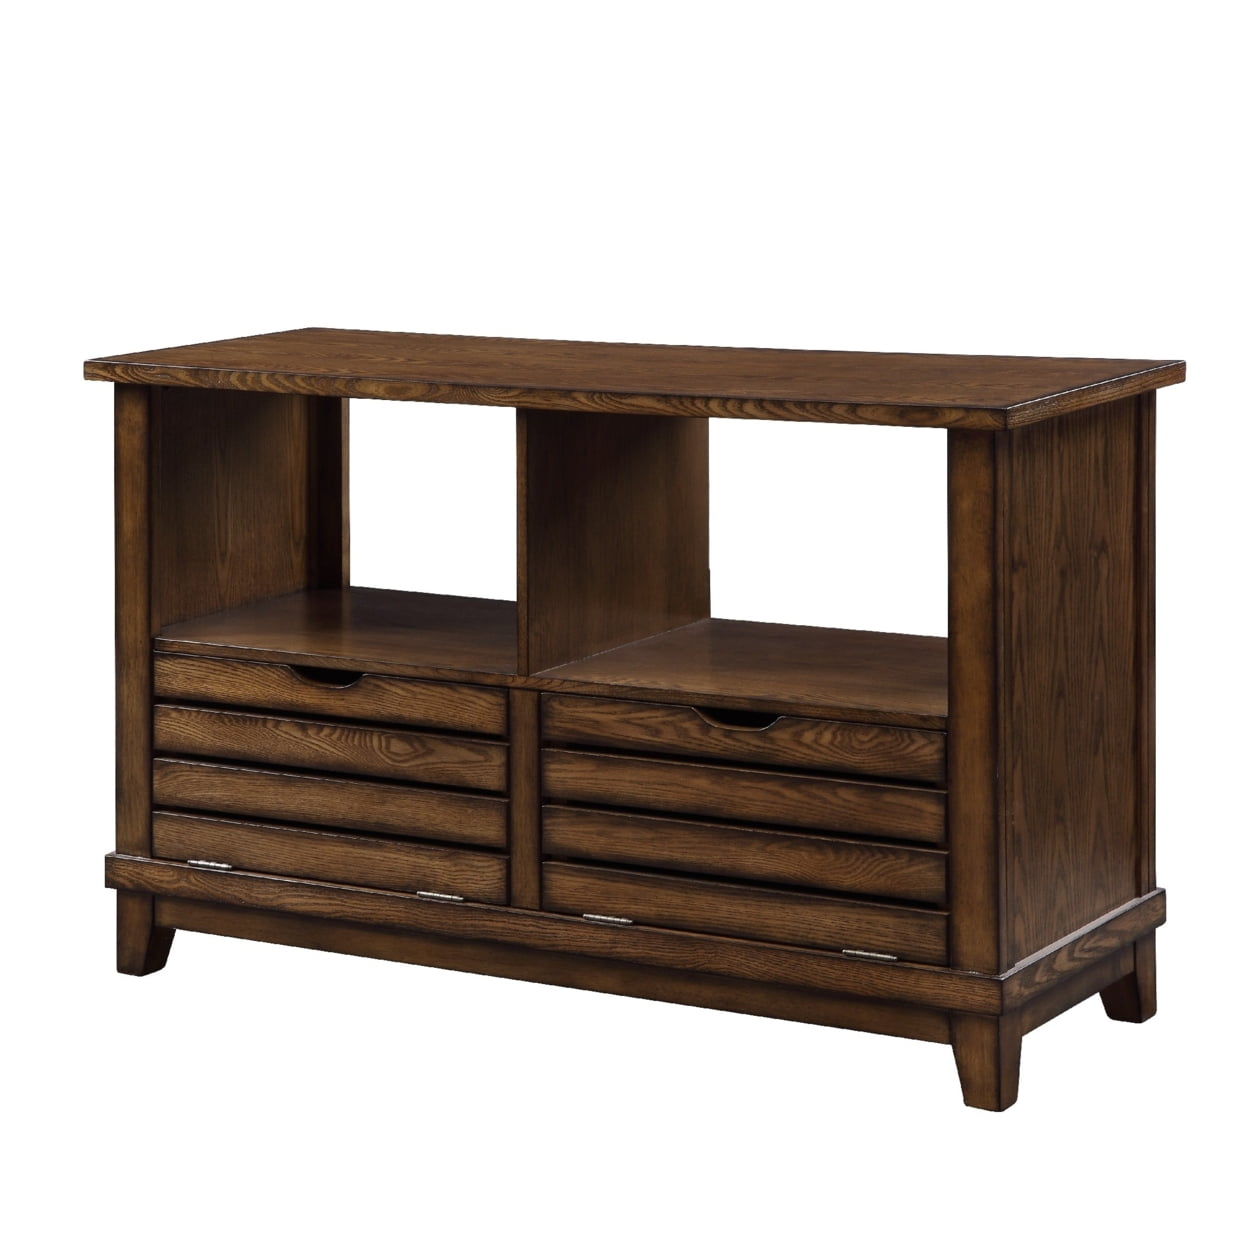 Picture of ACME Furniture 86938 48 x 18 x 30 in. Gabriella Sofa Table, Oak